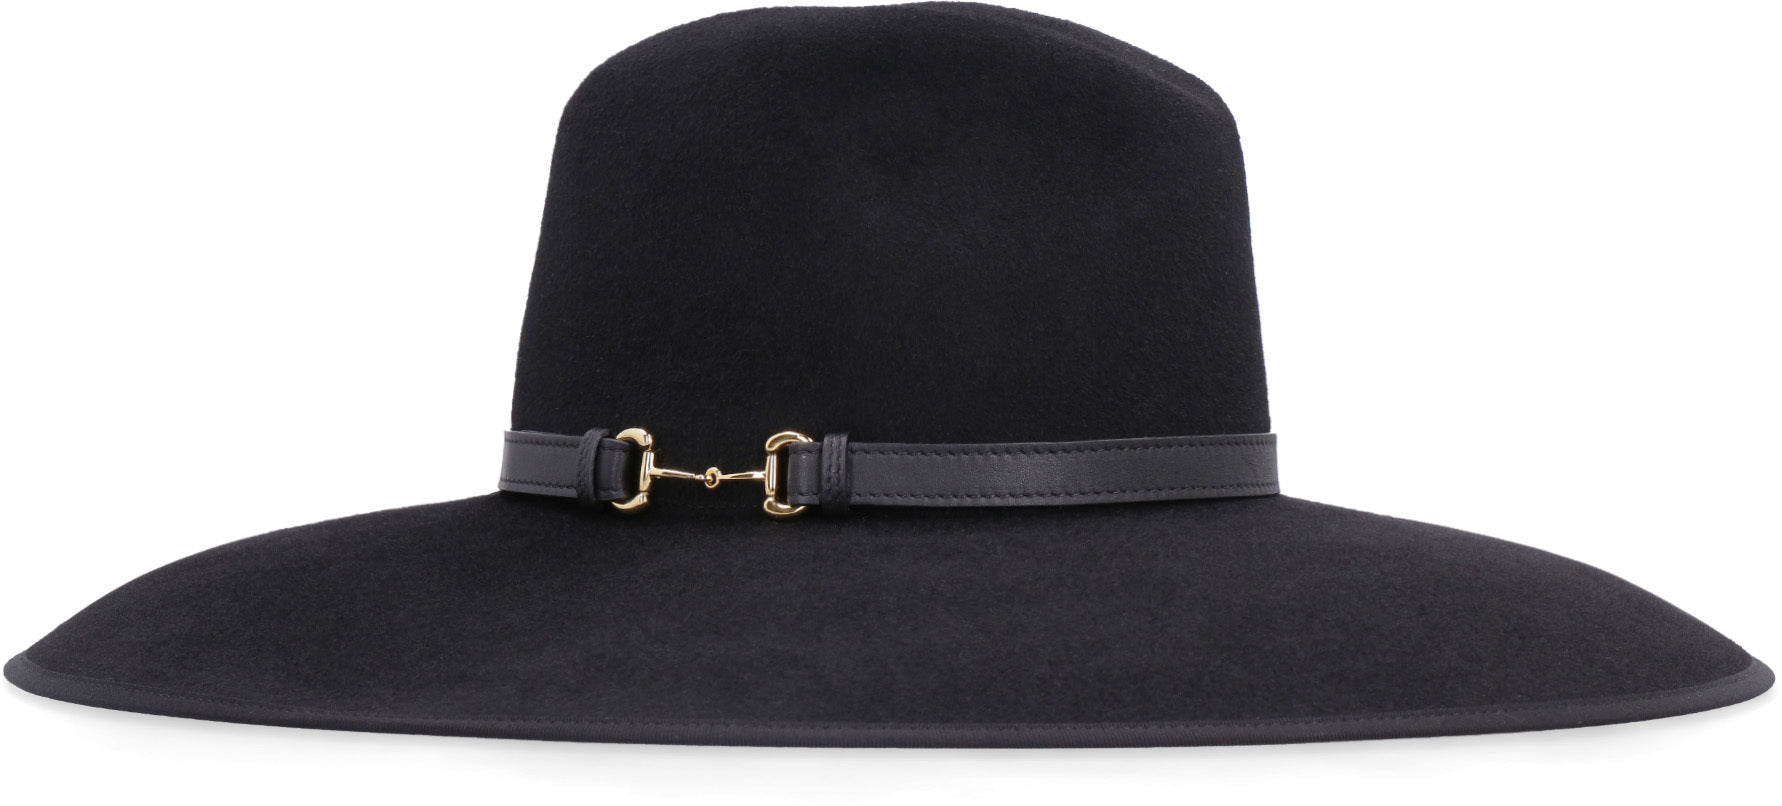 Chanel Black Felt Wide Brimmed Hat - ShopperBoard